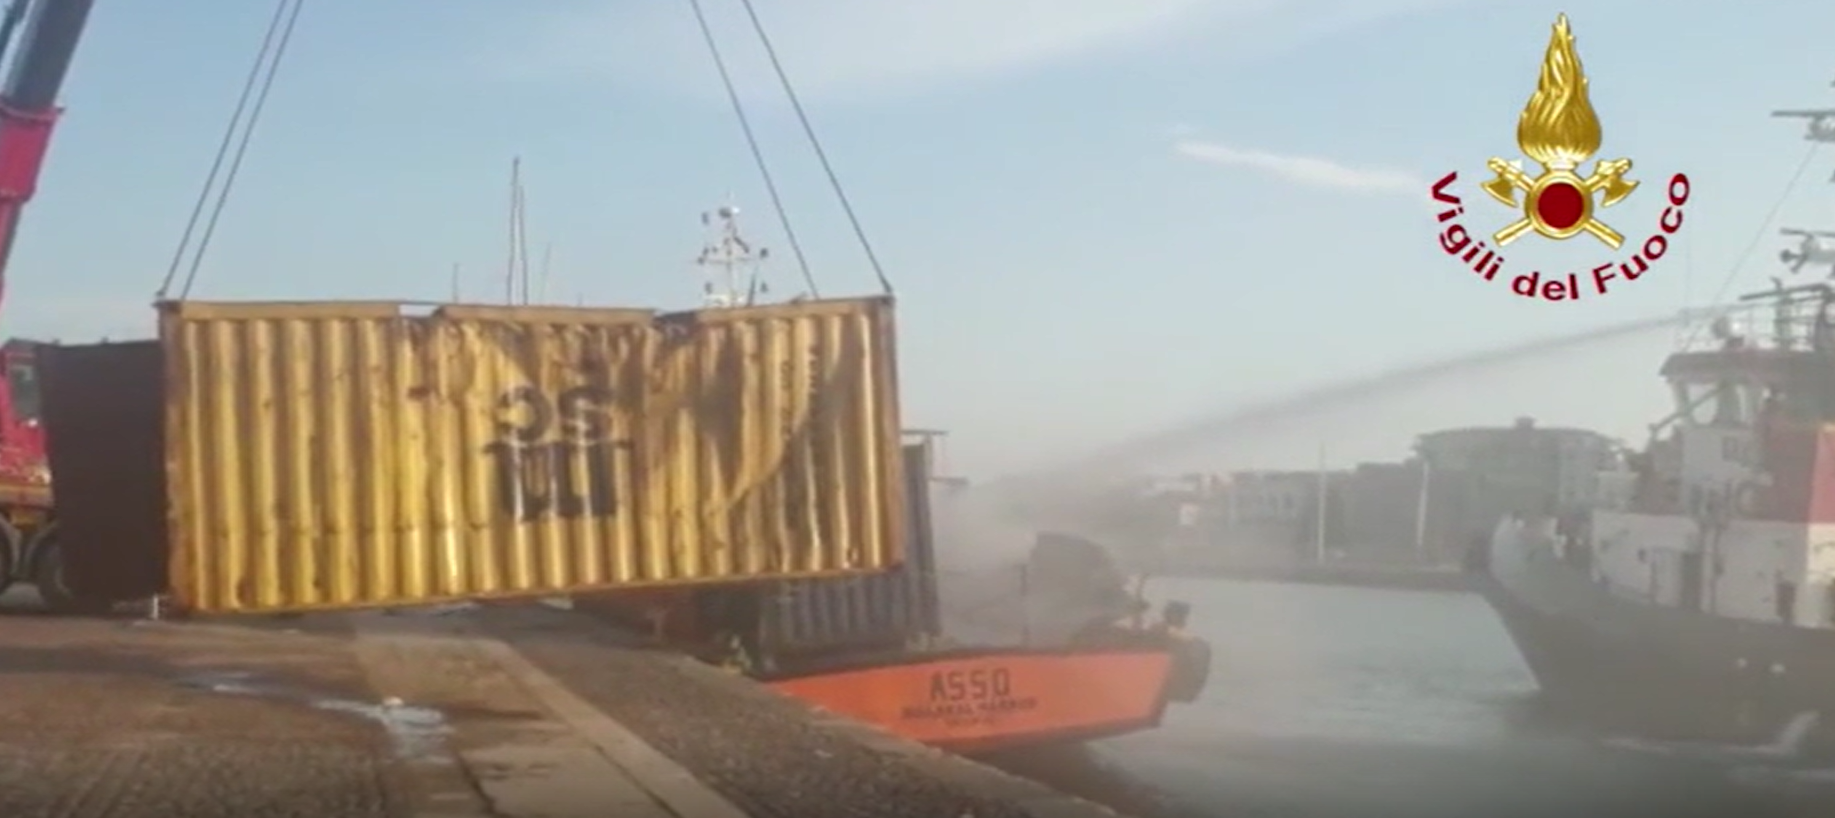 Crotone, esplode una saldatrice in porto: morte tre persone